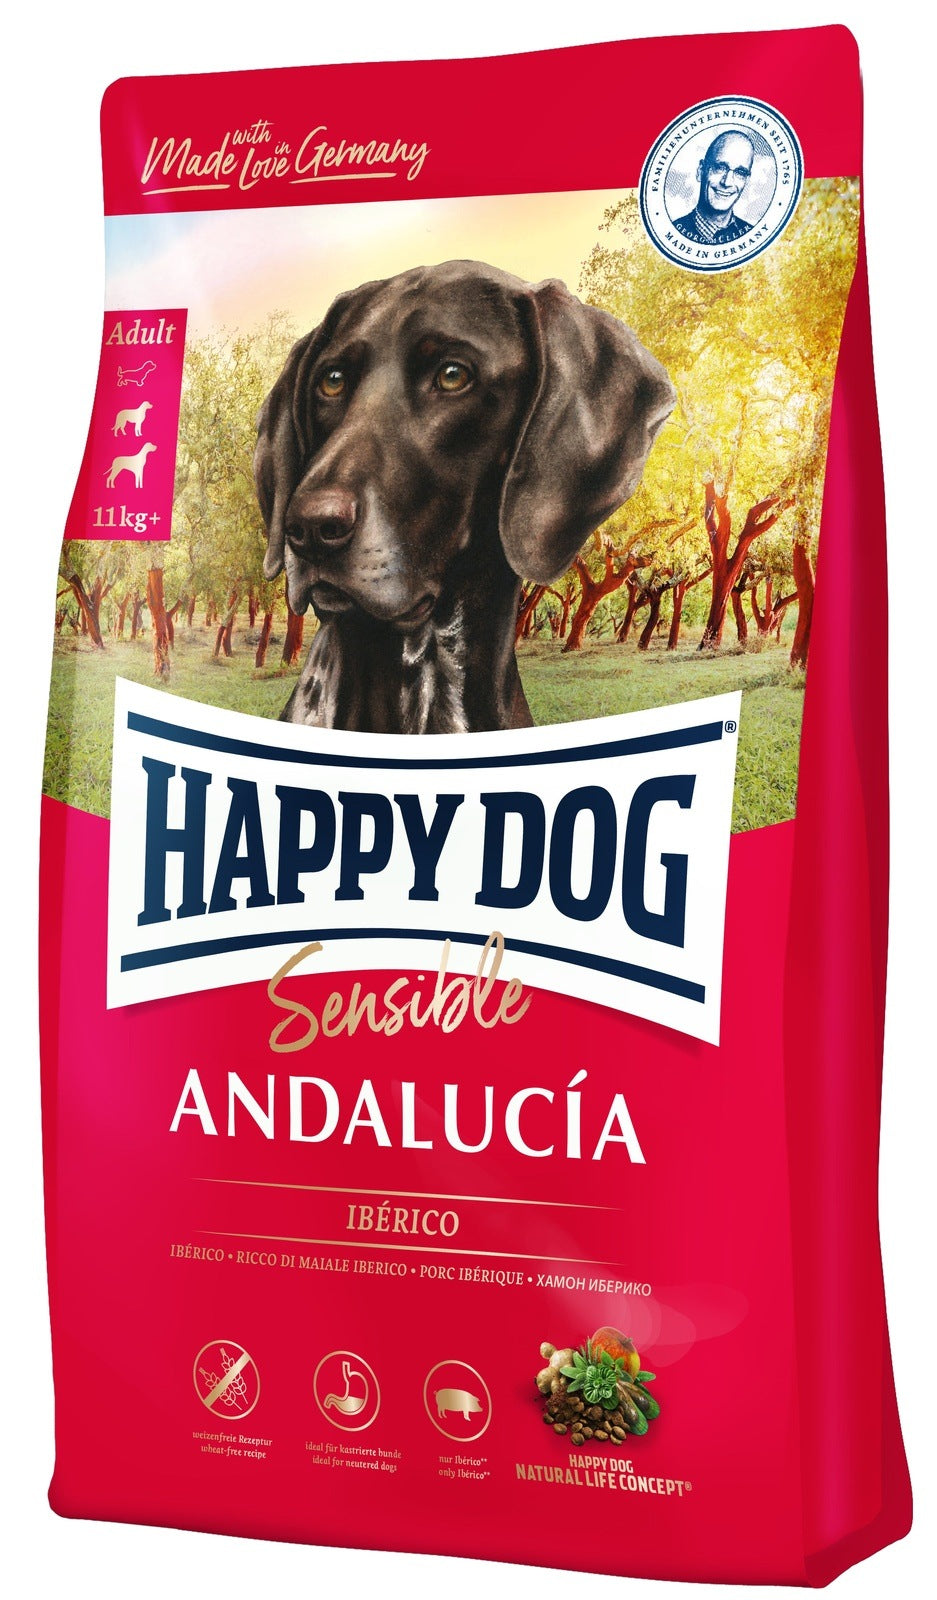 Artikel mit dem Namen Happy Dog Sensible Andalucía im Shop von zoo.de , dem Onlineshop für nachhaltiges Hundefutter und Katzenfutter.